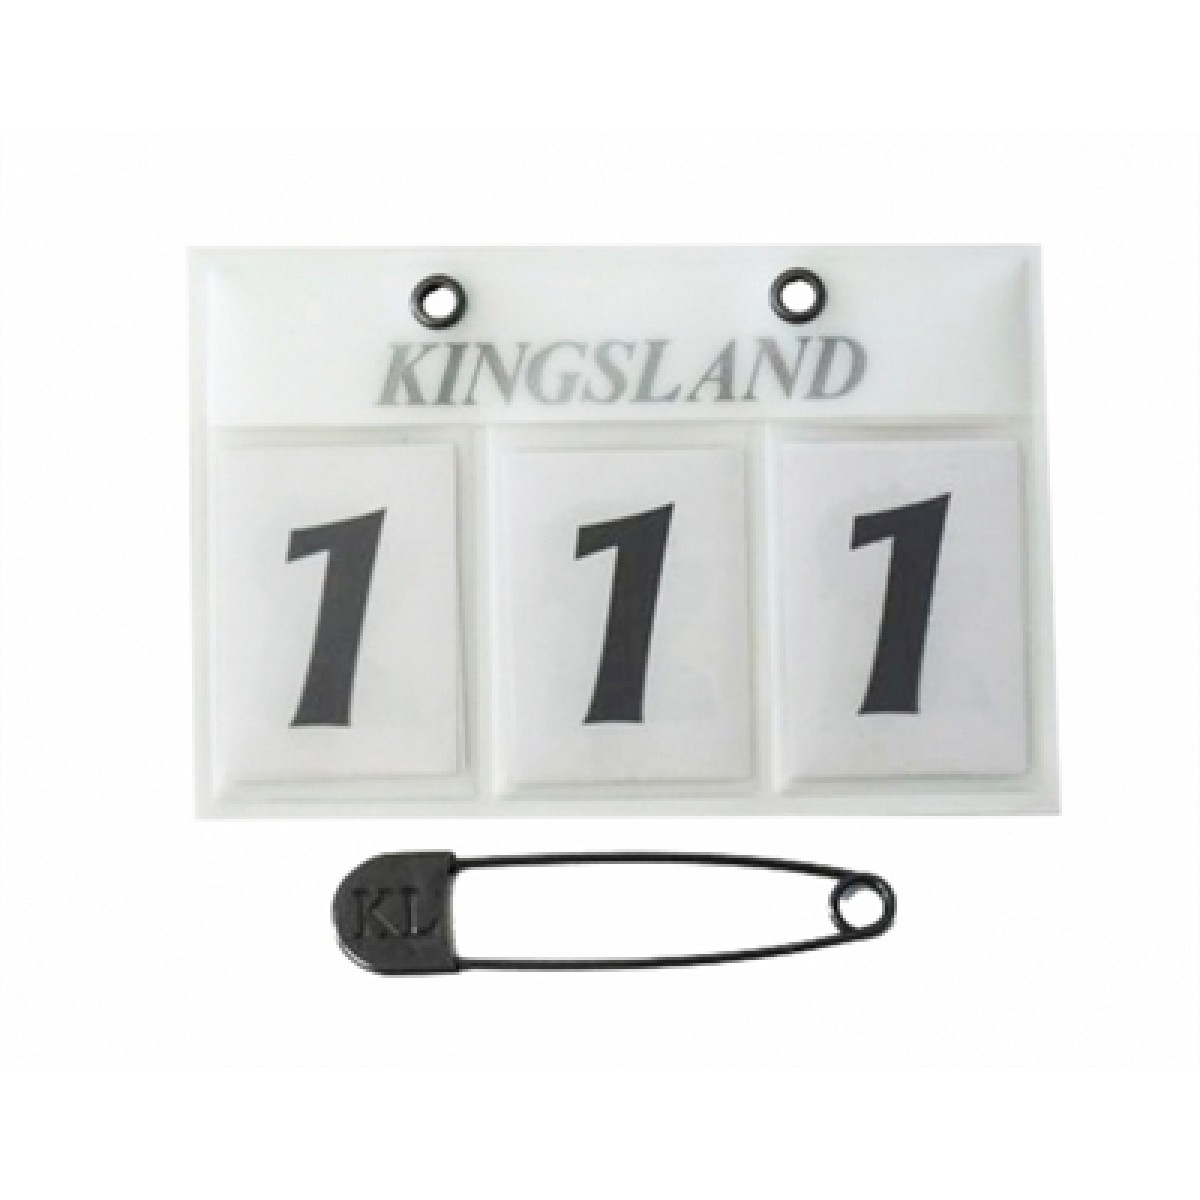 Kingsland Stævne Nr. - hvid - 3 tal